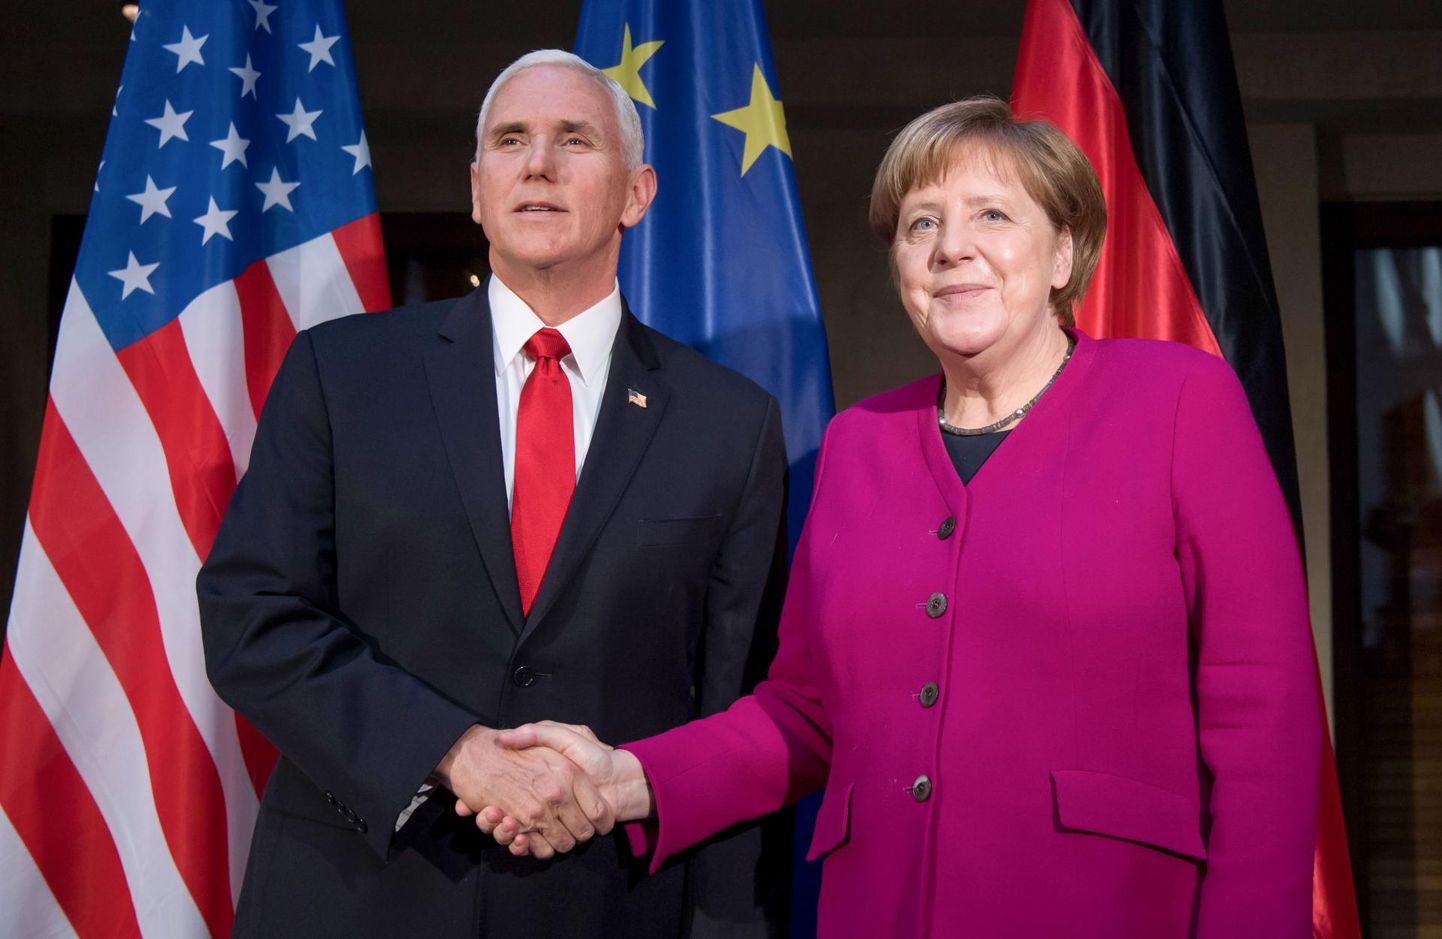 Vaatamata sümboolsele käesurumisele pidasid USA asepresident Mike Pence ja Saksa liidukantsler Angela Merkel Münchenis kõned, milles esitati mitmes kohas üksteisele vastukäivaid seisukohti.